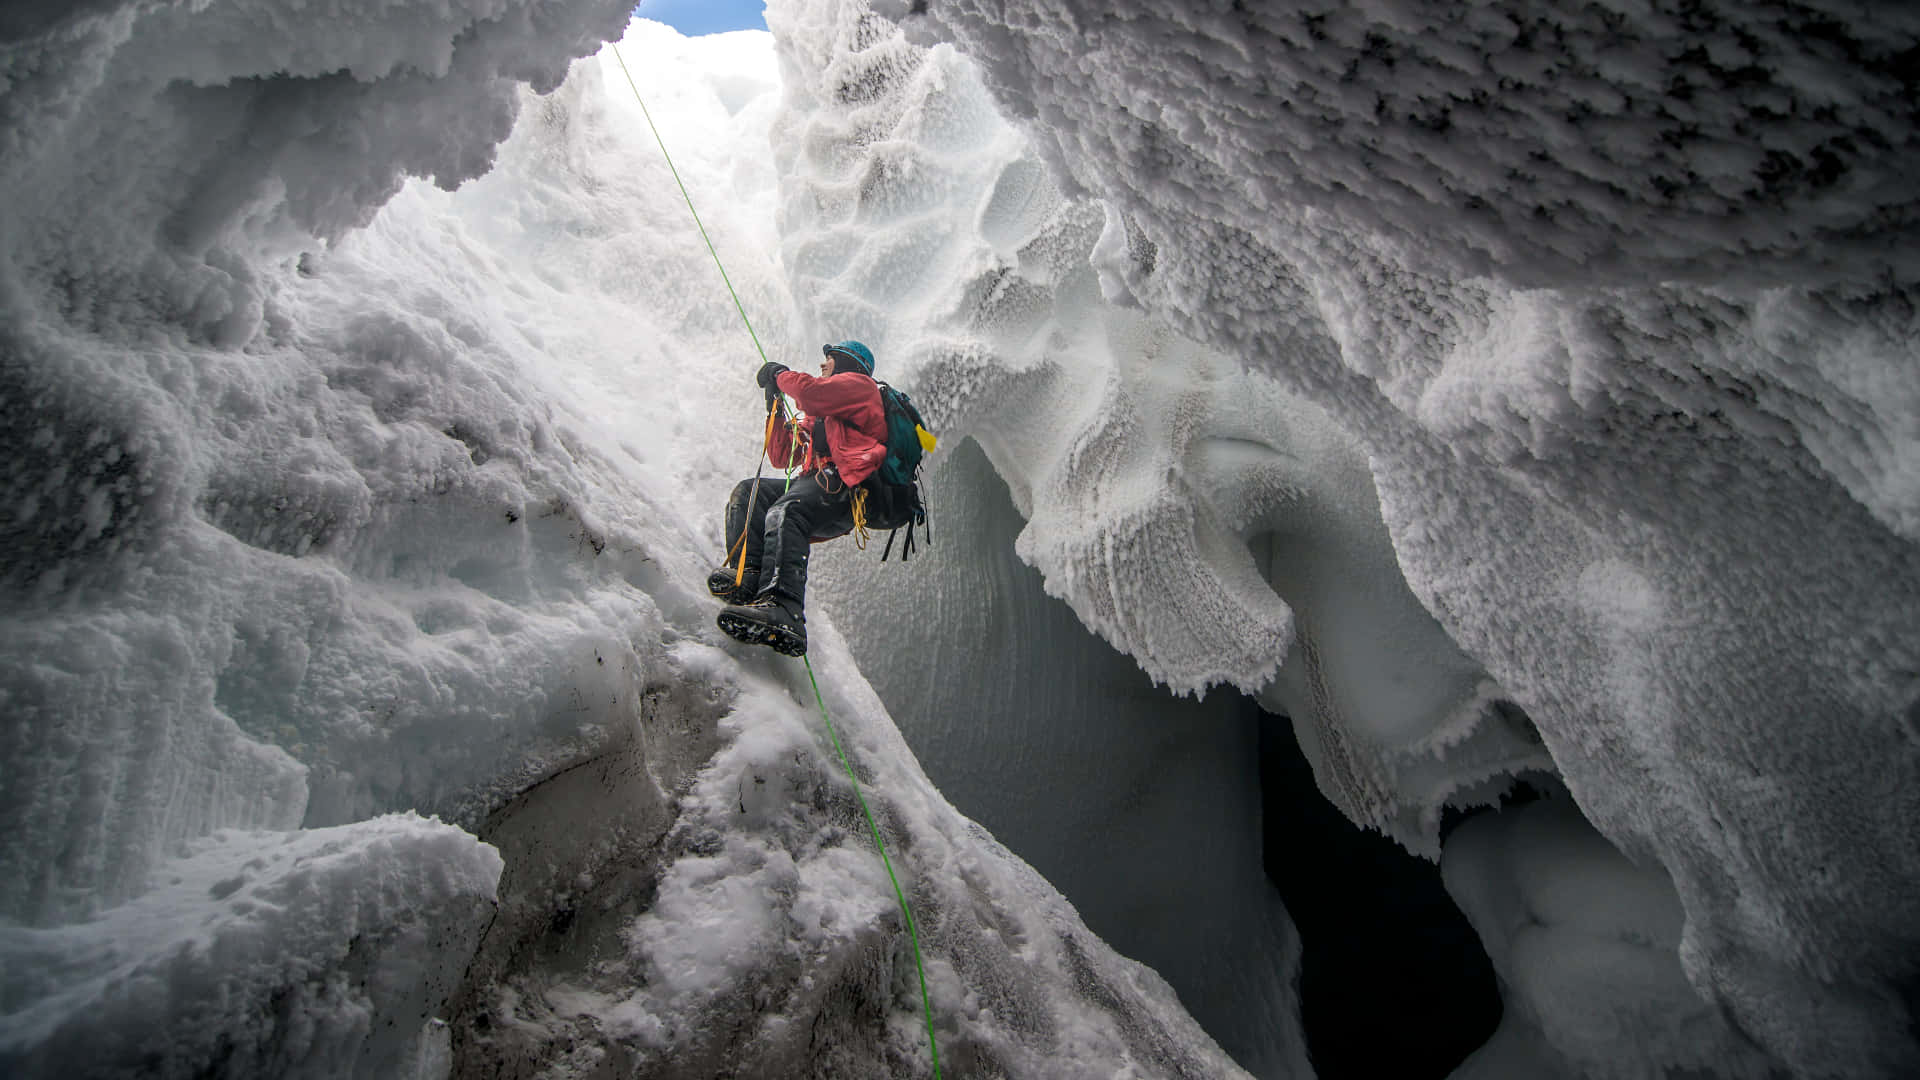 A daring ice climber ascending a frozen waterfall Wallpaper